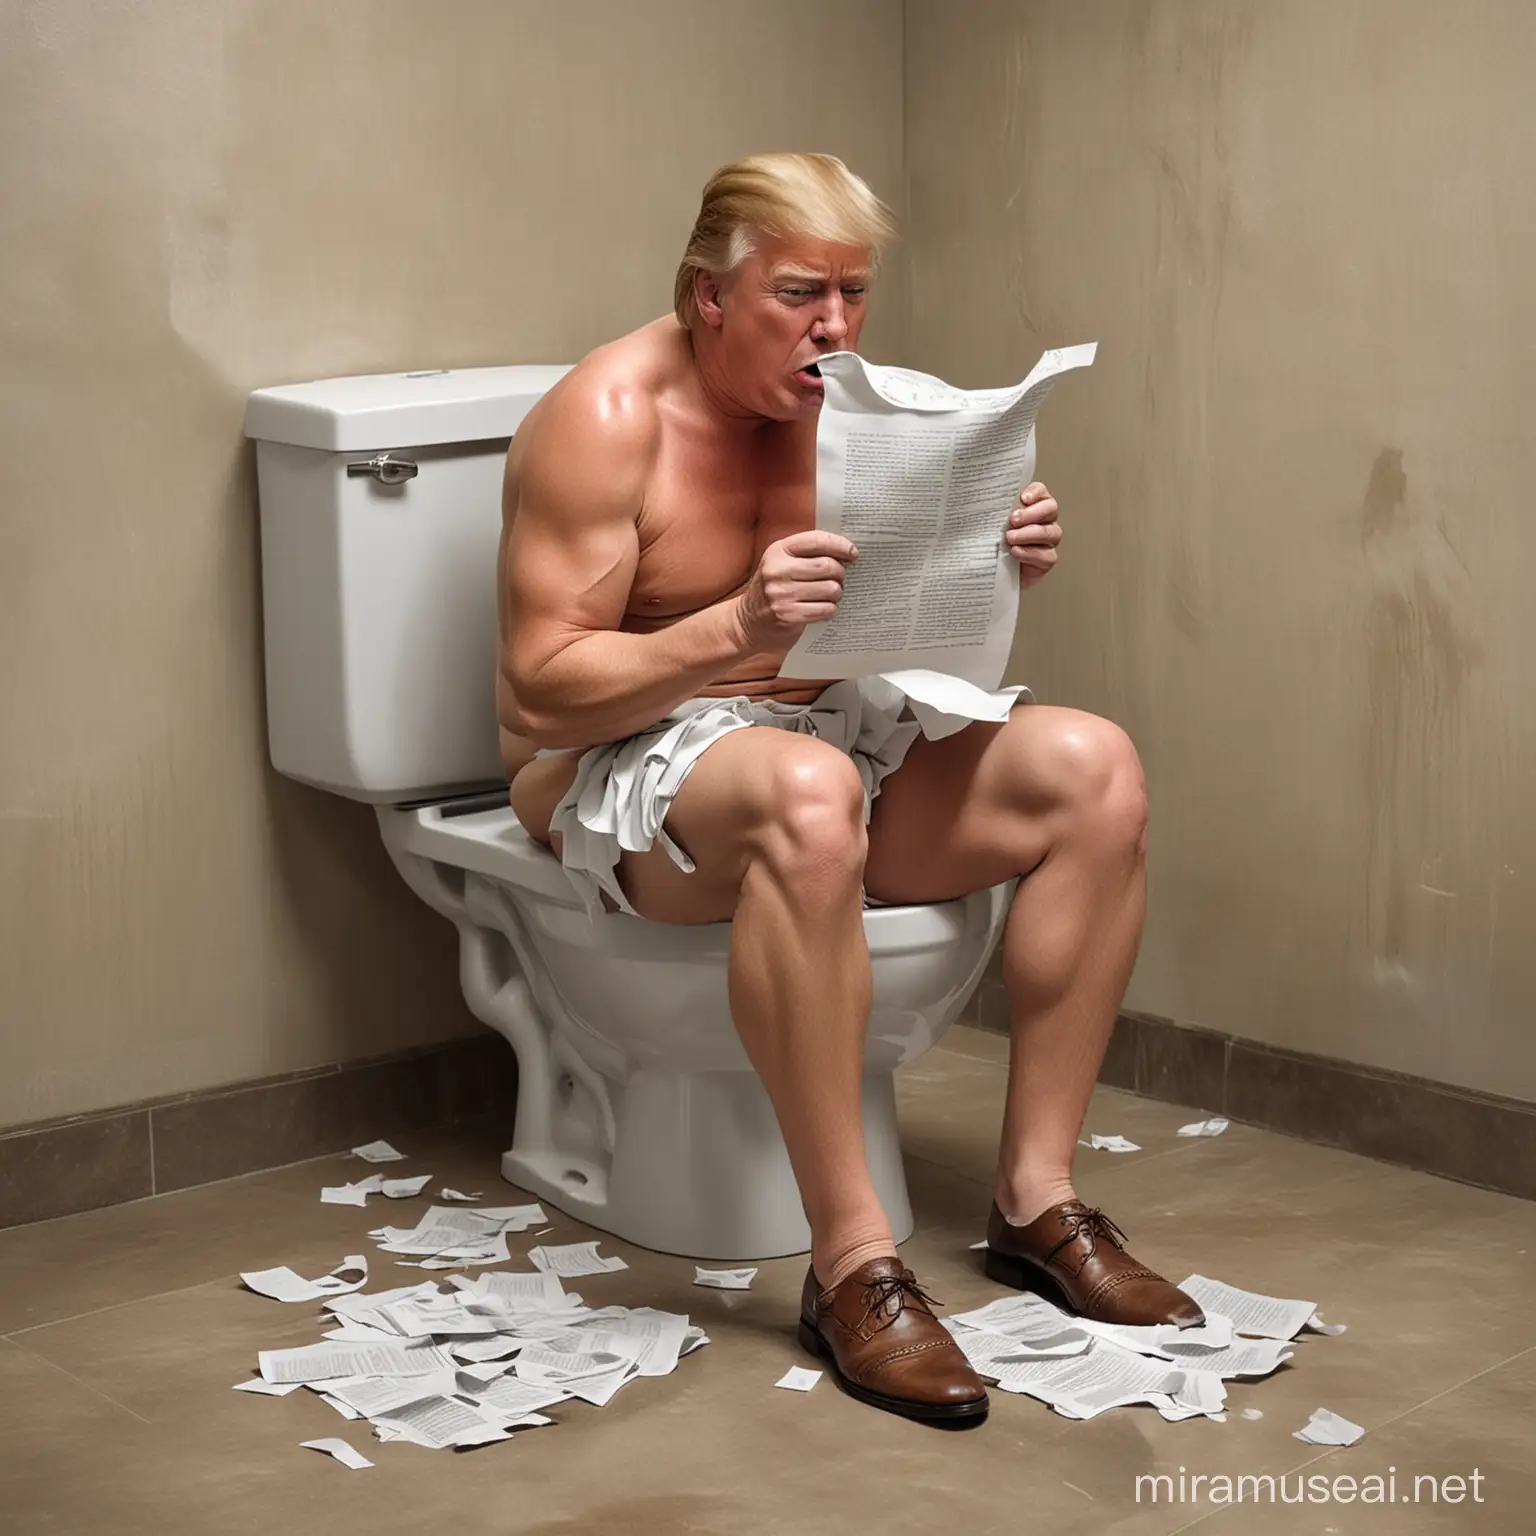 Ronald Trump piange, asciugandosi le lacrime con un fazzoletto, con pezzi di carta di un manoscritto sparsi intorno a lui. Siede su un wc in mutande . Lo vediamo con braccia e gambe, in piena altezza. In stile realistico. 